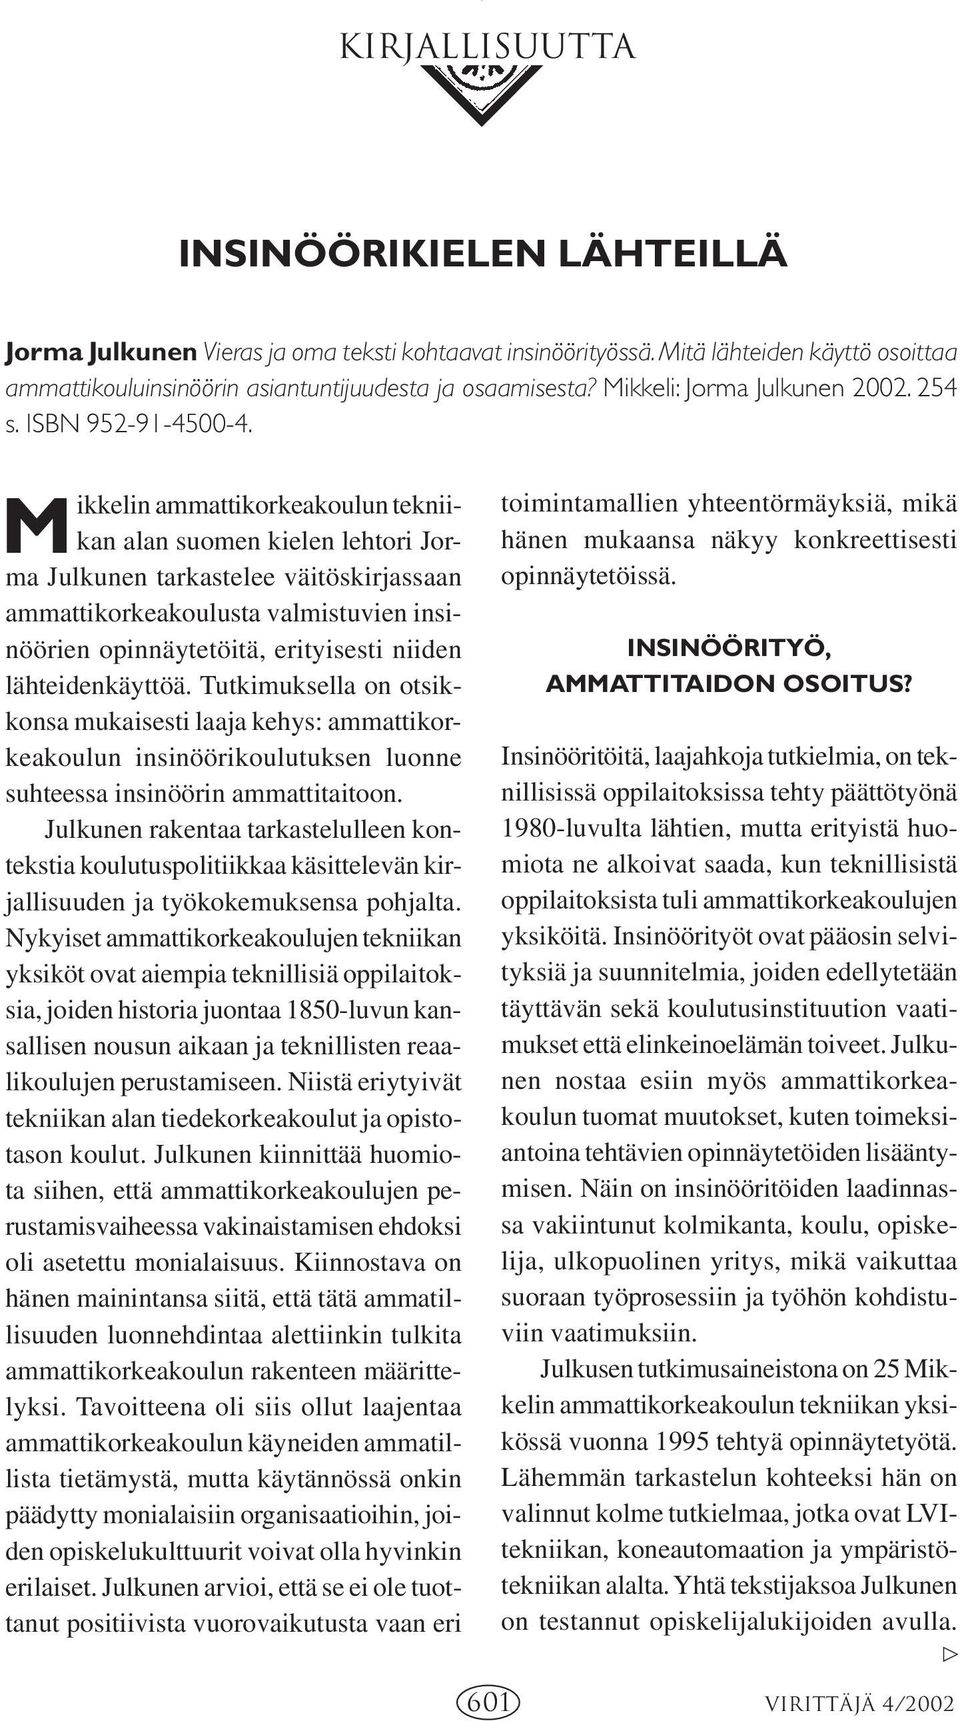 Mikkelin ammattikorkeakoulun tekniikan alan suomen kielen lehtori Jorma Julkunen tarkastelee väitöskirjassaan ammattikorkeakoulusta valmistuvien insinöörien opinnäytetöitä, erityisesti niiden